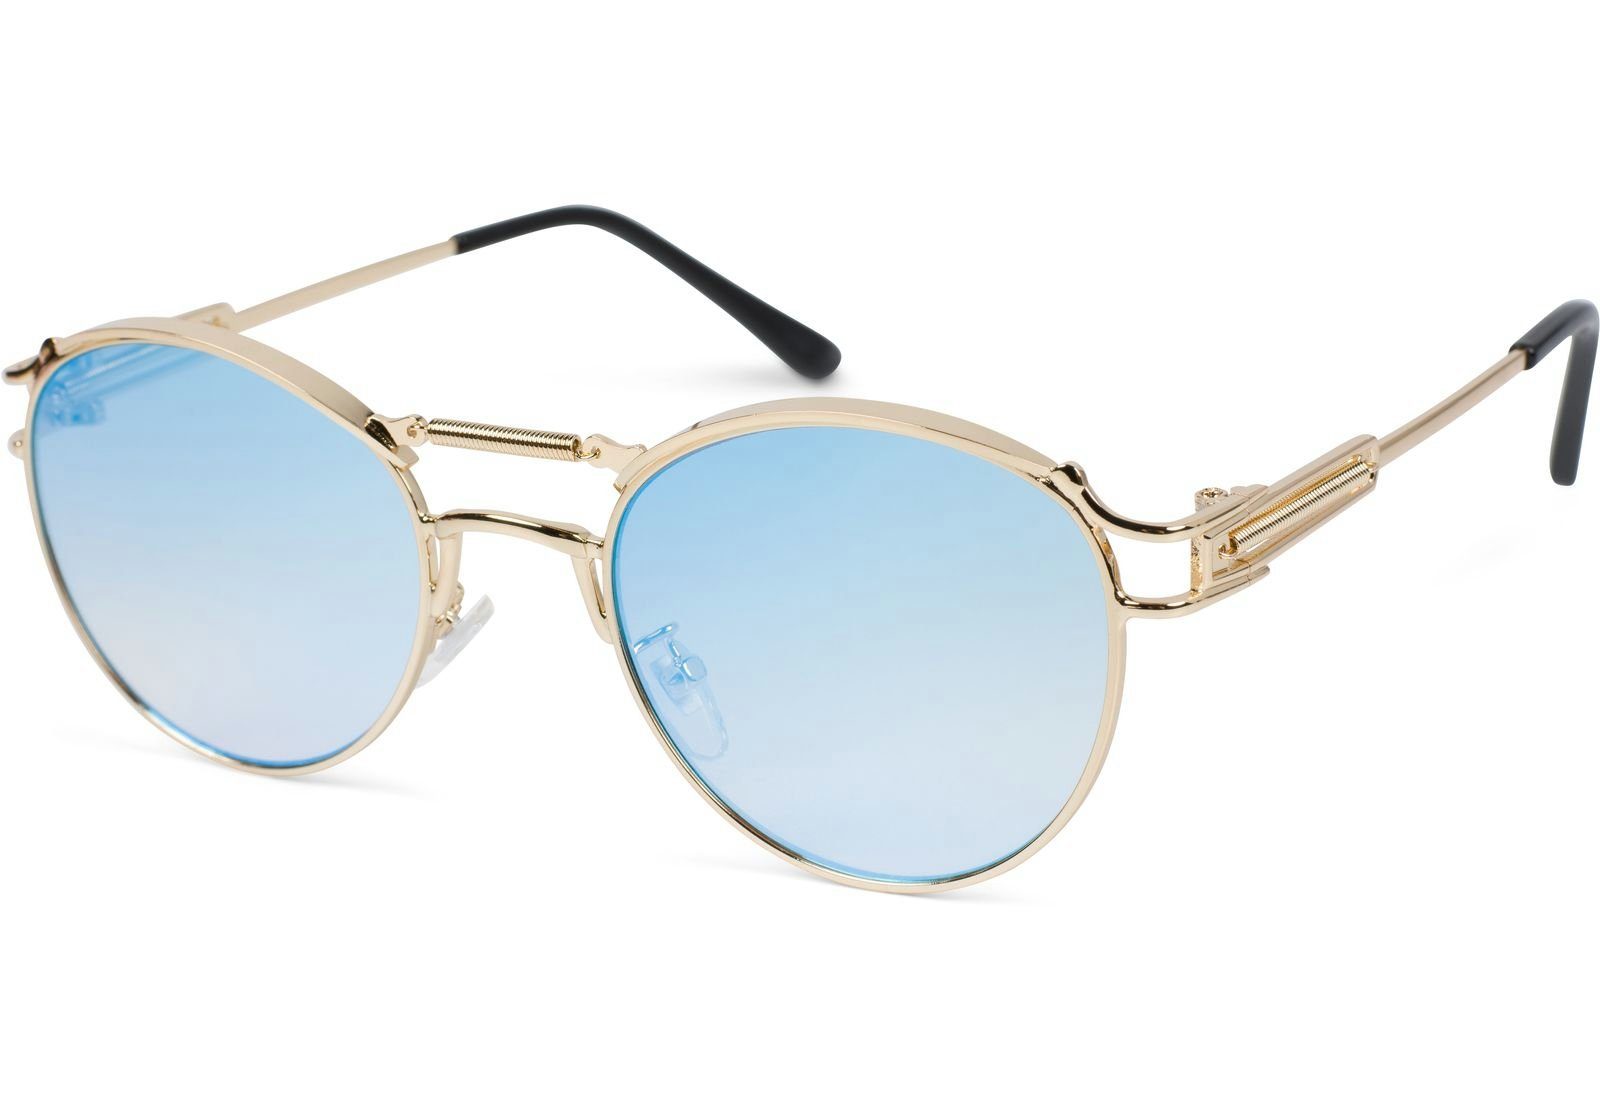 Bench. Sonnenbrillen online kaufen | OTTO